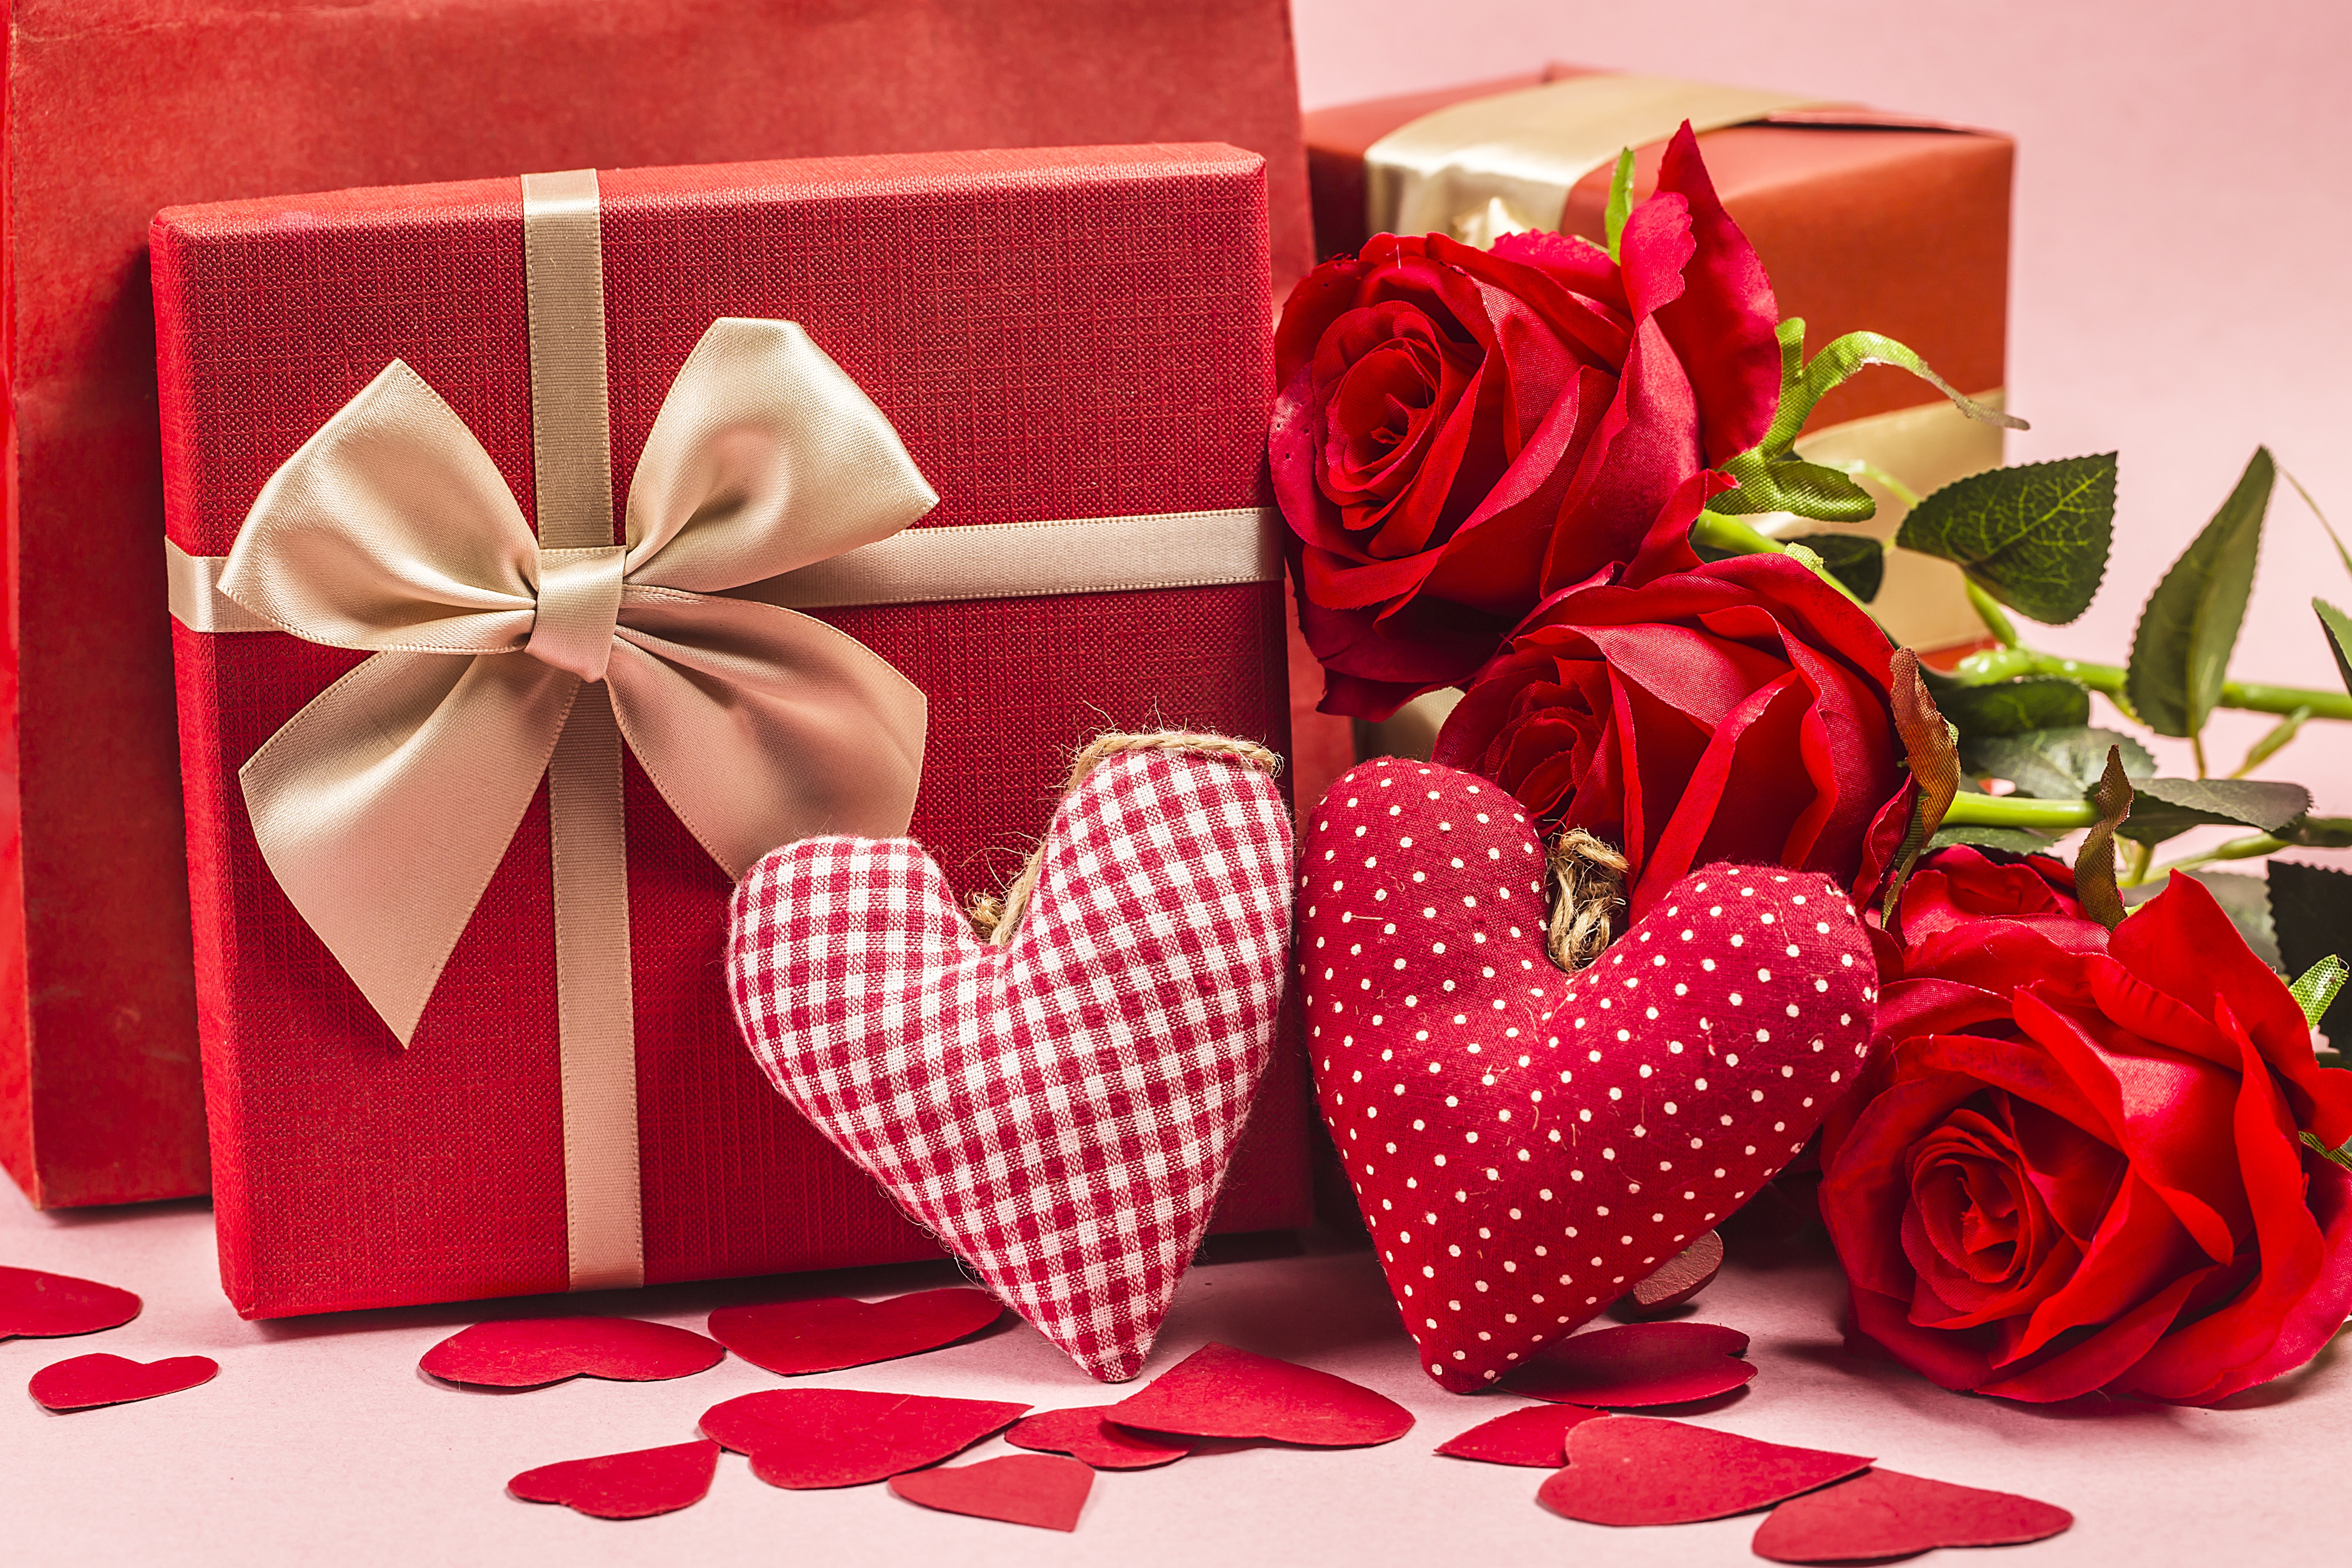 Скачать обои бесплатно Любовь, Роза, Сердце, Подарки, День Святого Валентина, Праздничные картинка на рабочий стол ПК